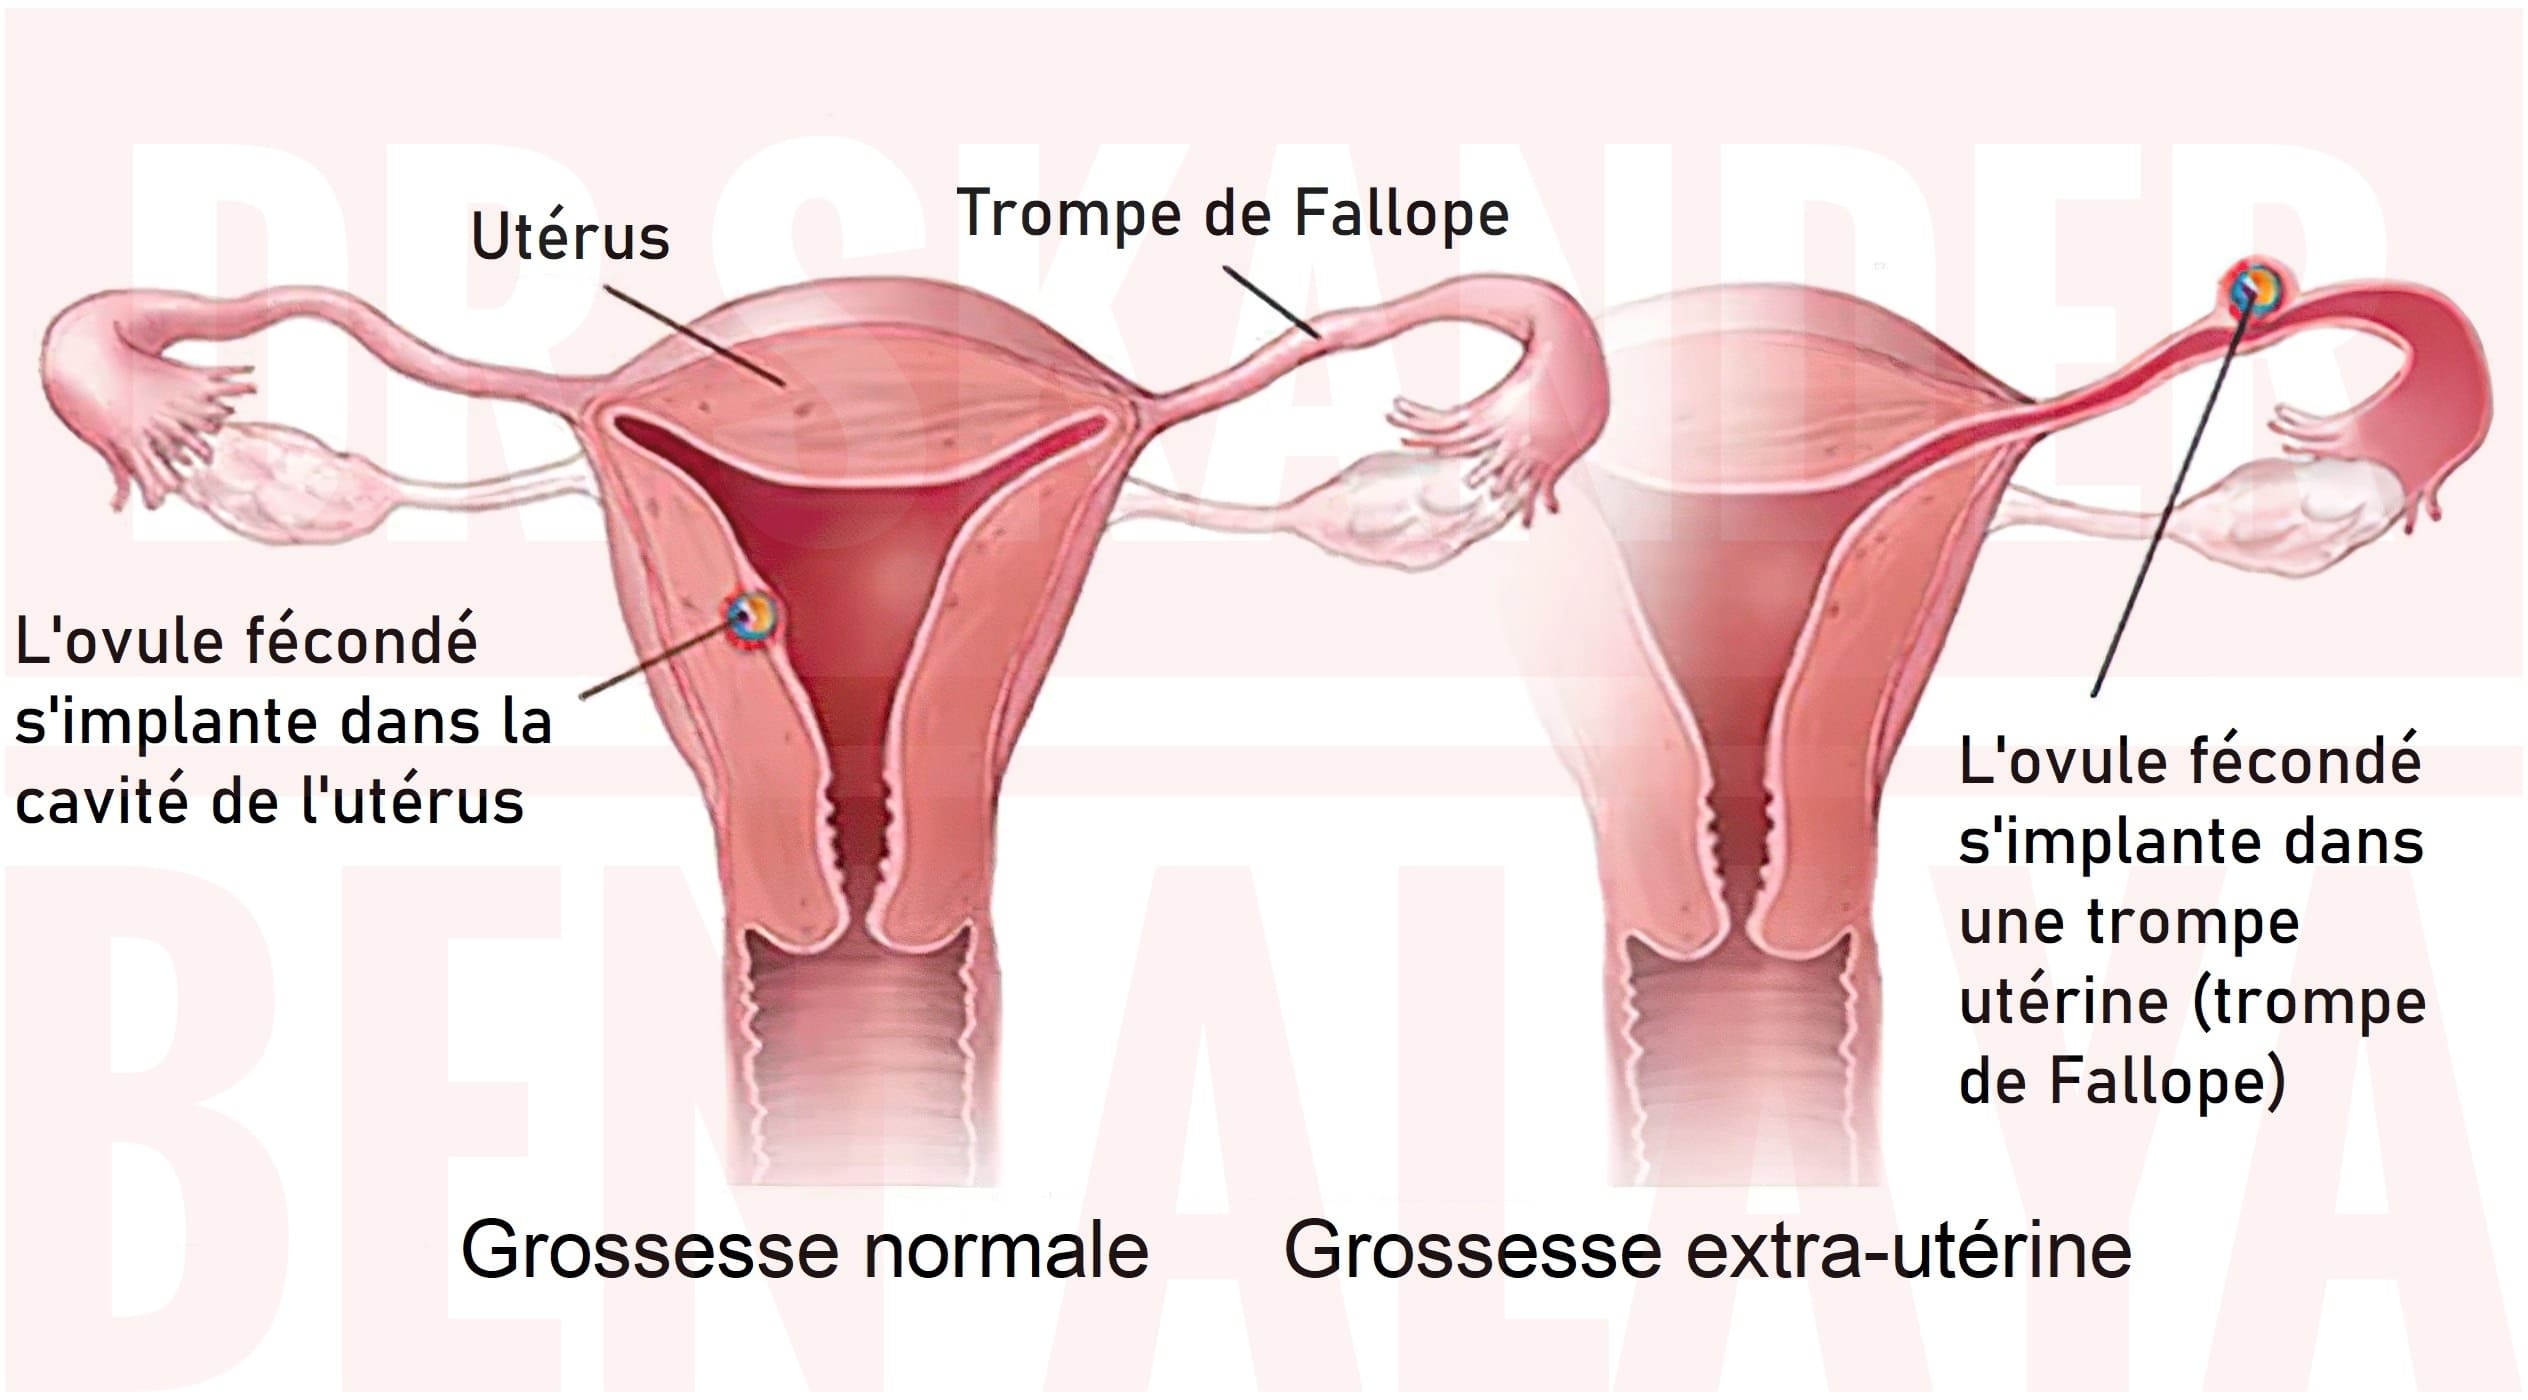 La plupart du temps, la grossesse extra-utérine se développe dans la trompe de Fallope.